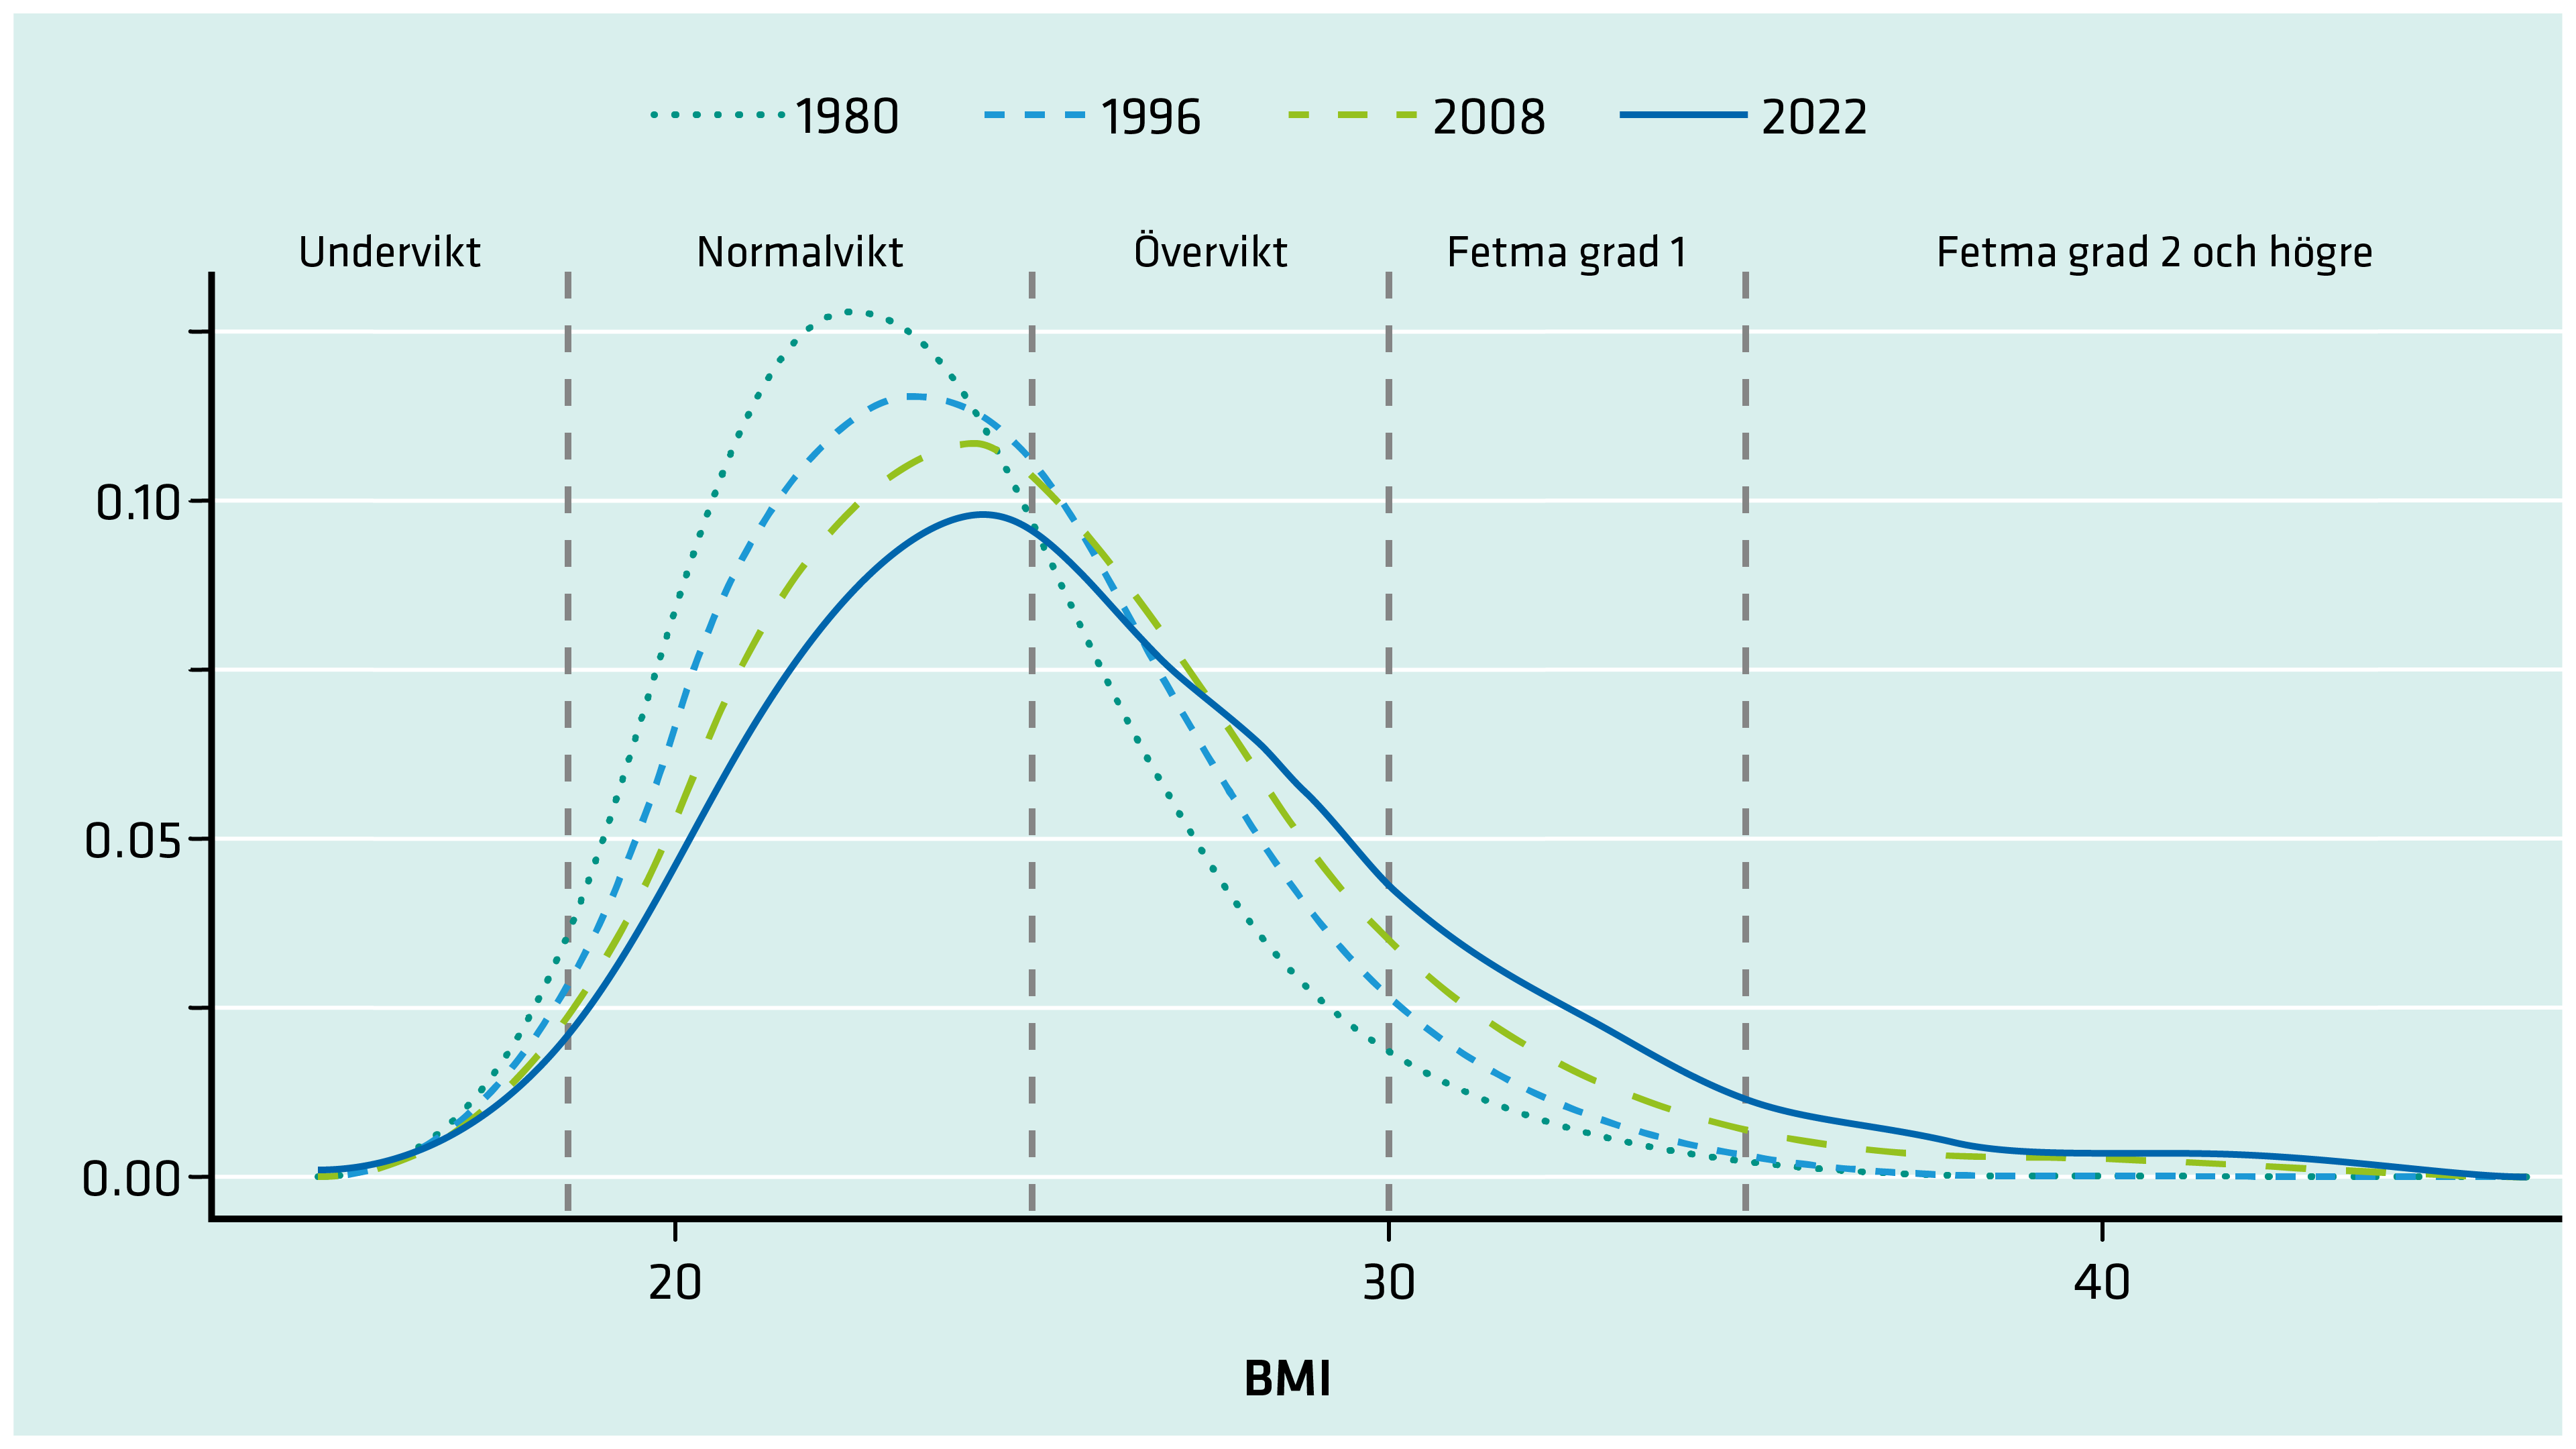 Fördelningen av BMI i befolkningen förflyttar sig mot högre och högre BMI värden över tid. 